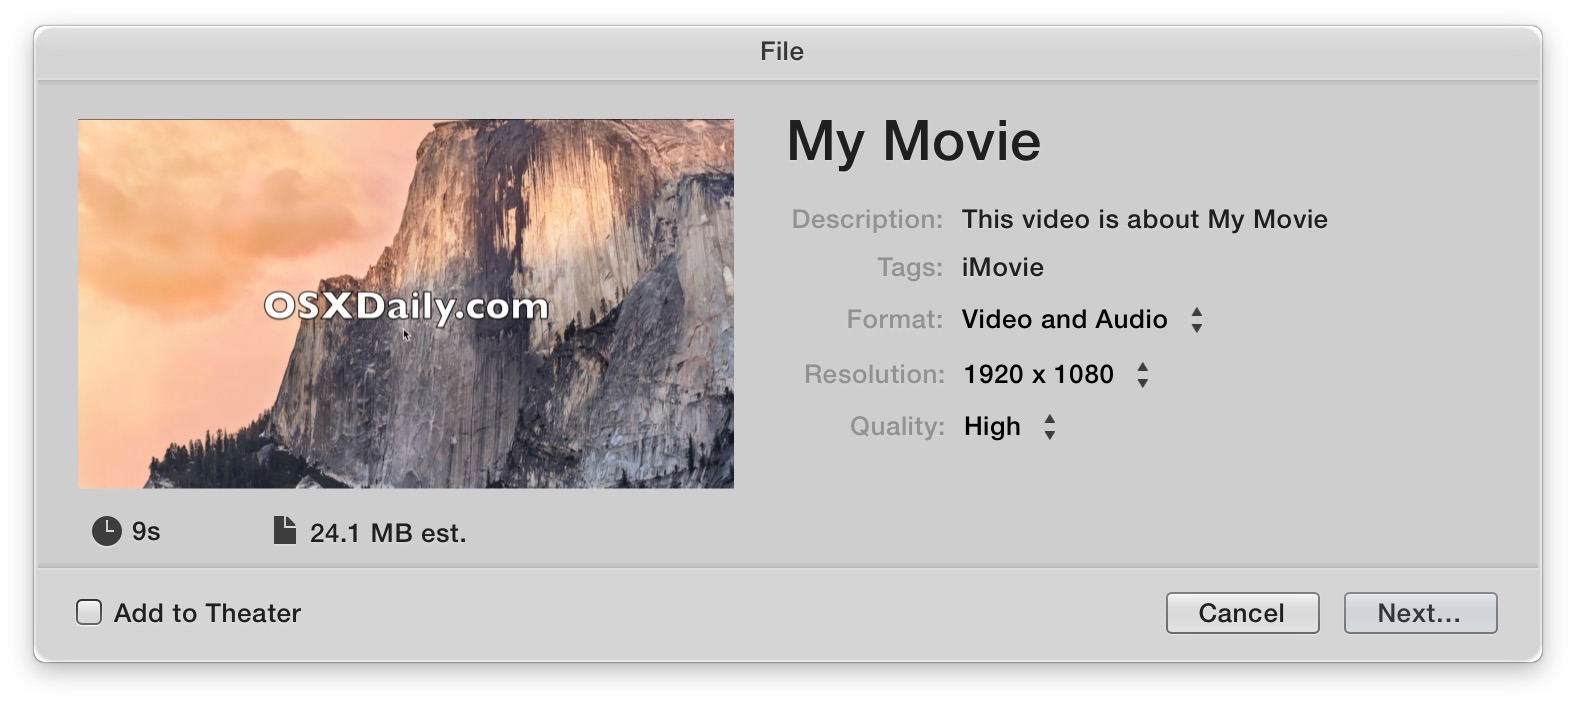 Сохранение видео с помощью iMovie для Mac OS X - это уникальный опыт сохранения файлов с помощью меню общего доступа